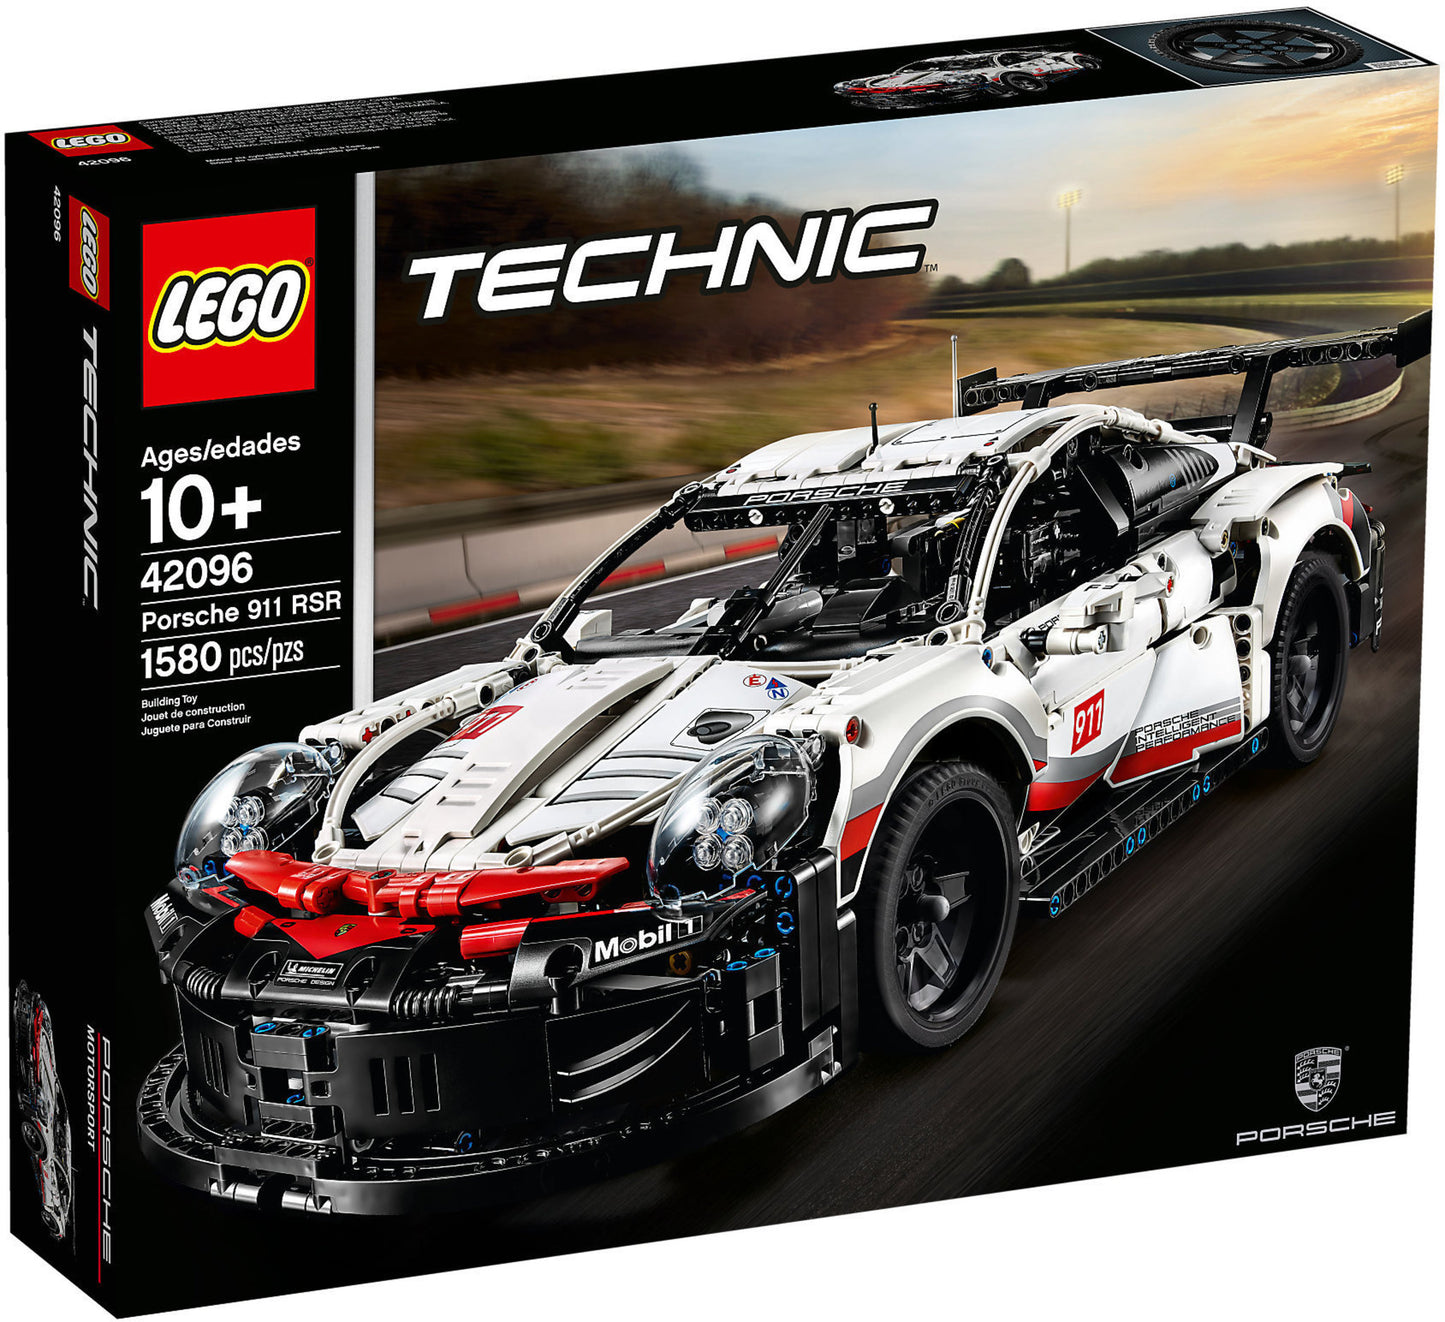 42096 LEGO Technic - Porsche 911 Rsr